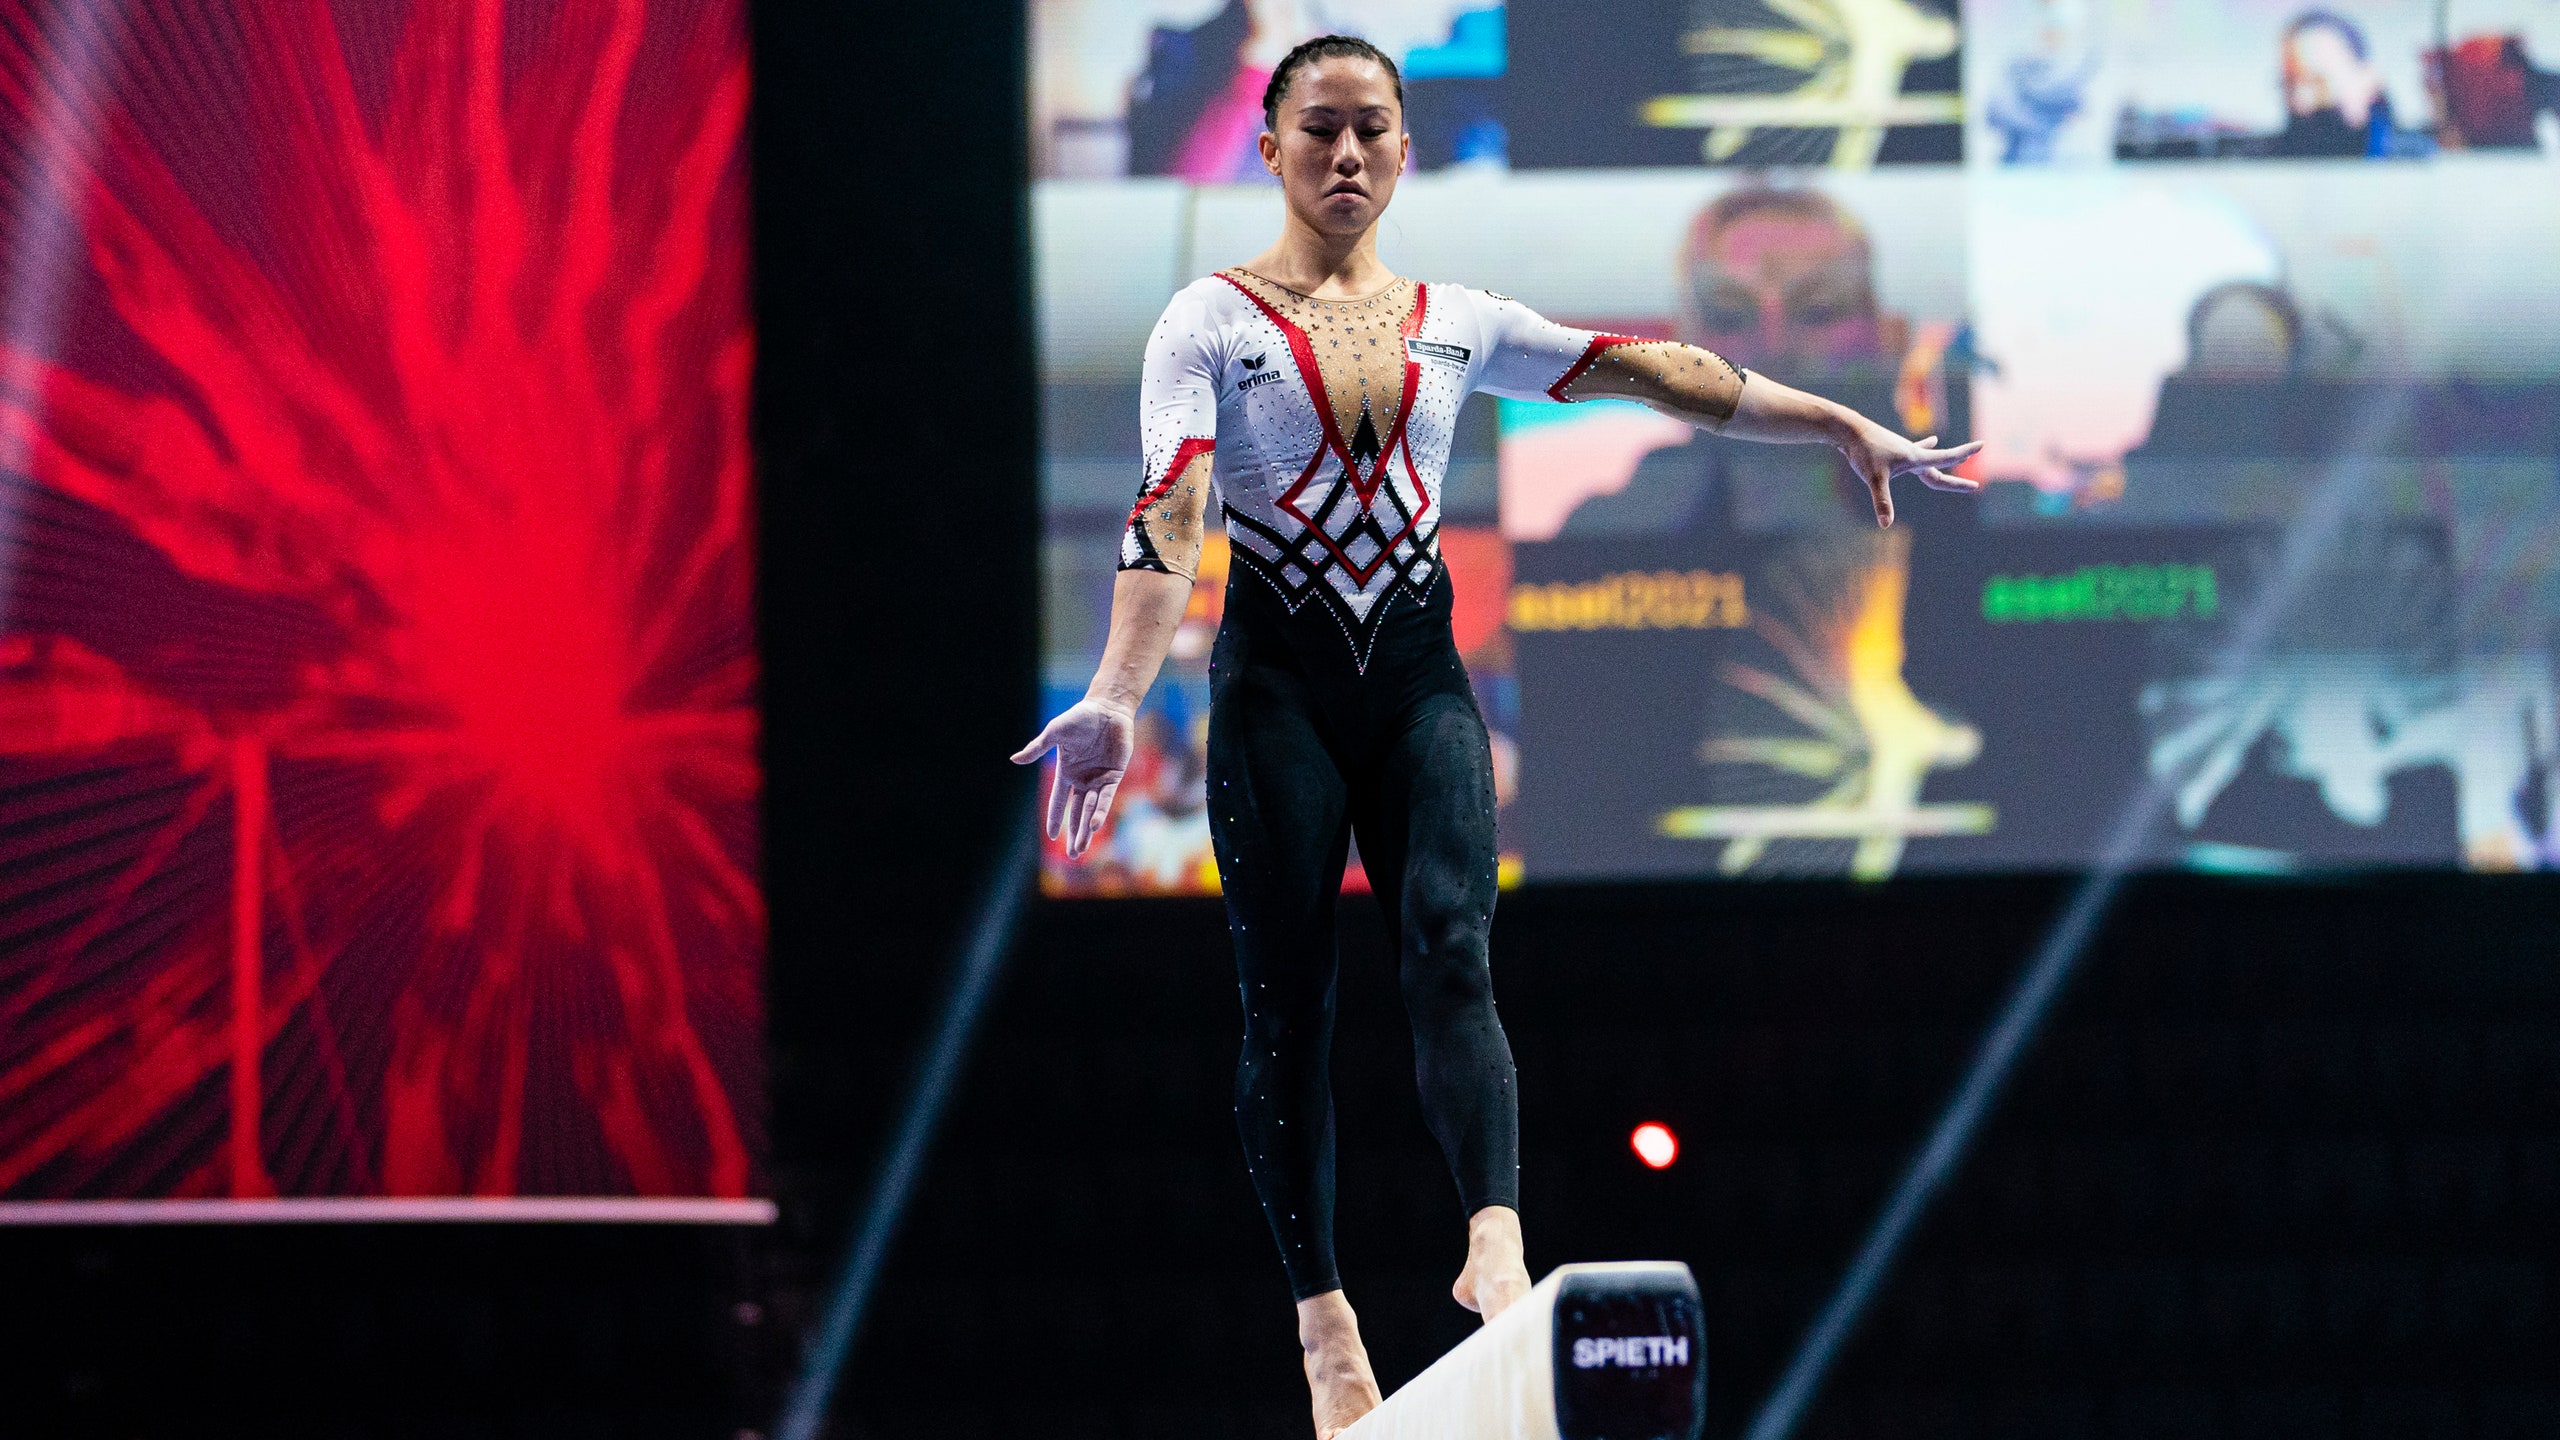 Гимнастки против сексуализации в спорте Сара Восс выступила на соревнованиях в закрытом комбинезоне